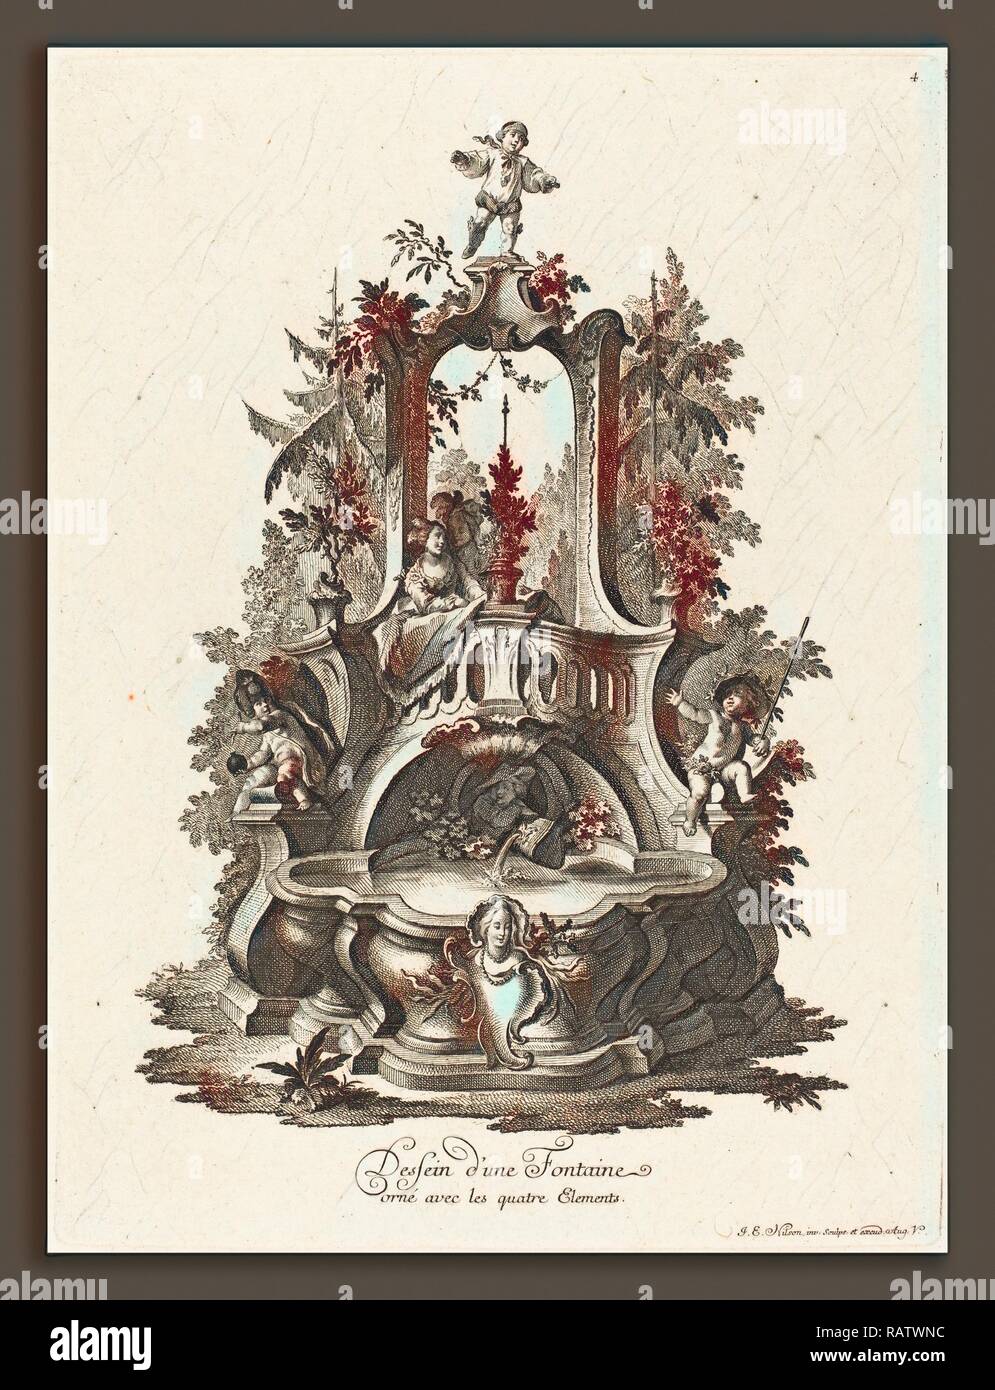 Johann Esaias Nilson (German, 1721 - 1788), Dessein d'une Fontaine orné avec les quatre Elements (Design for a reimagined Stock Photo